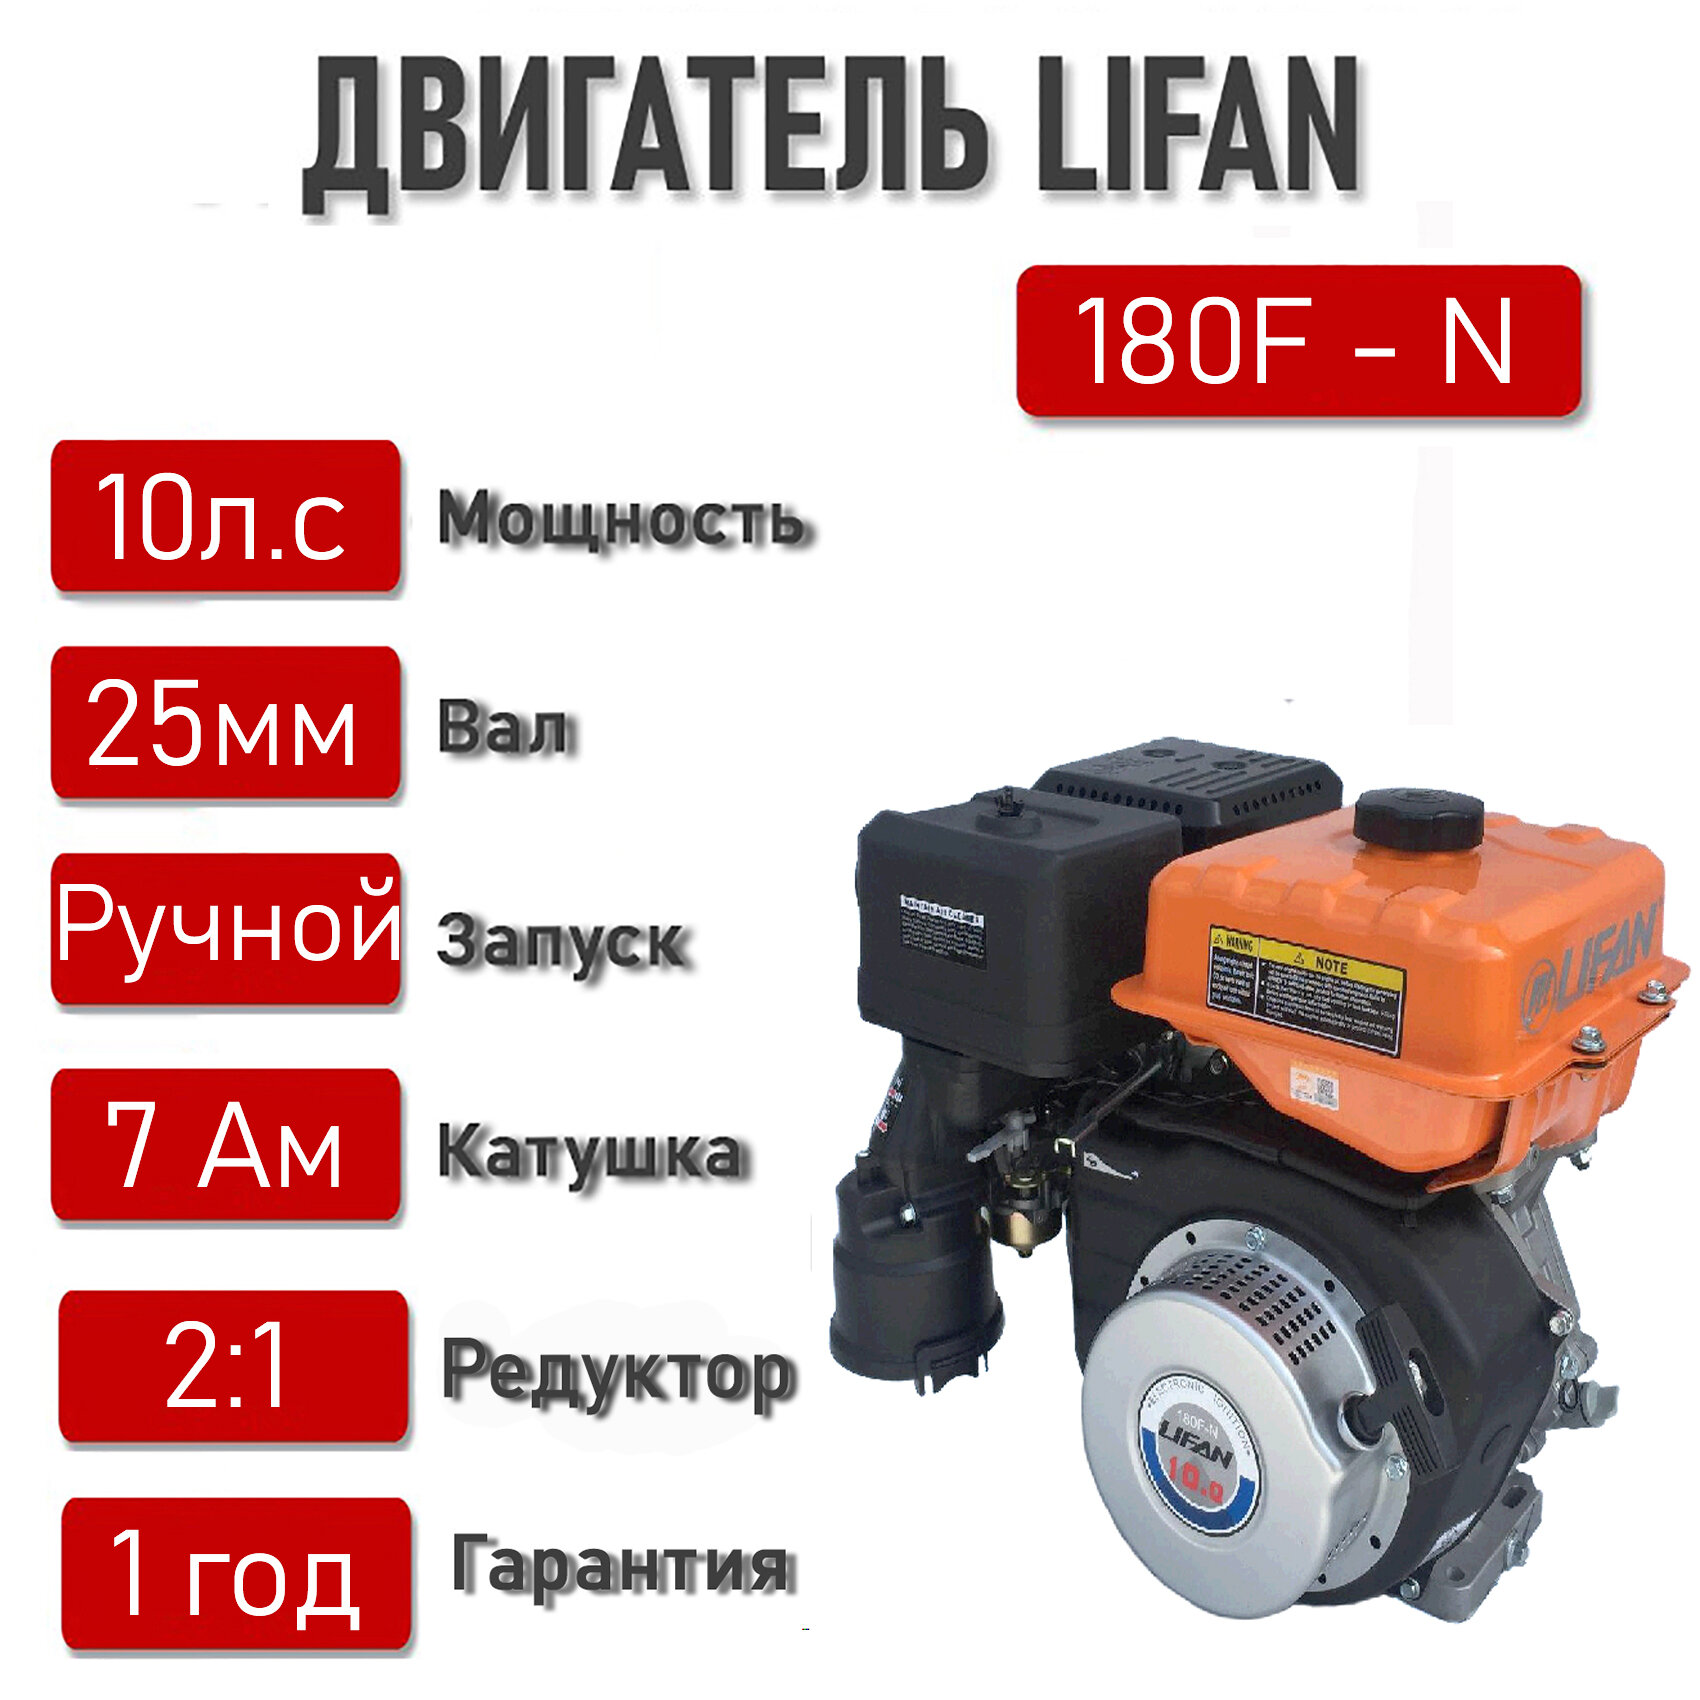 Двигатель LIFAN 10 л. с. с катушкой 7А LIFAN 180F-N (4Т, 10,0 л. с.) с редуктором 2:1 (вал 25мм)